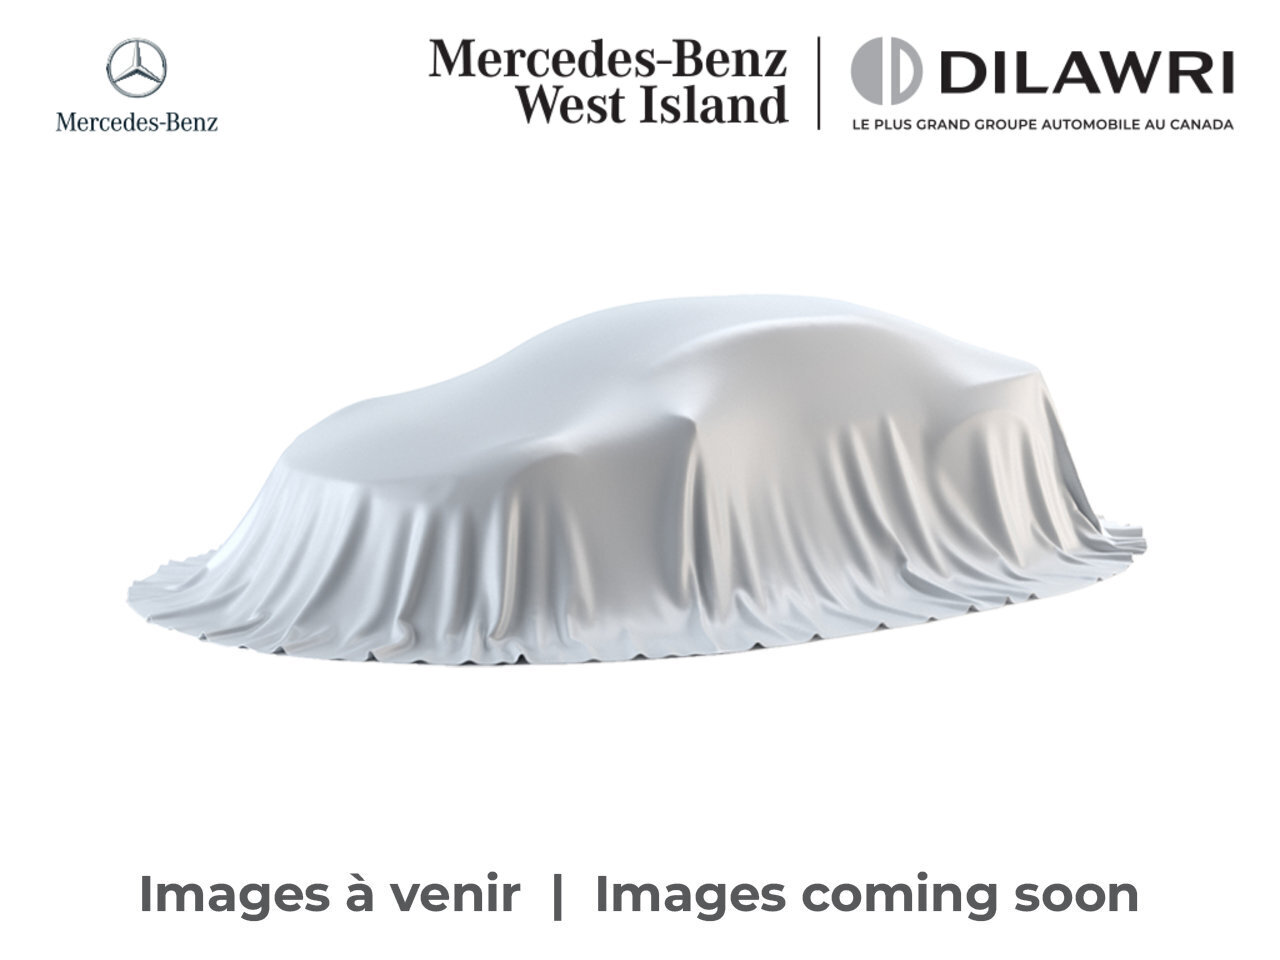 2022 Mercedes-Benz GLA250 4MATIC SUV * Certifié * Certified Premium Pack * H